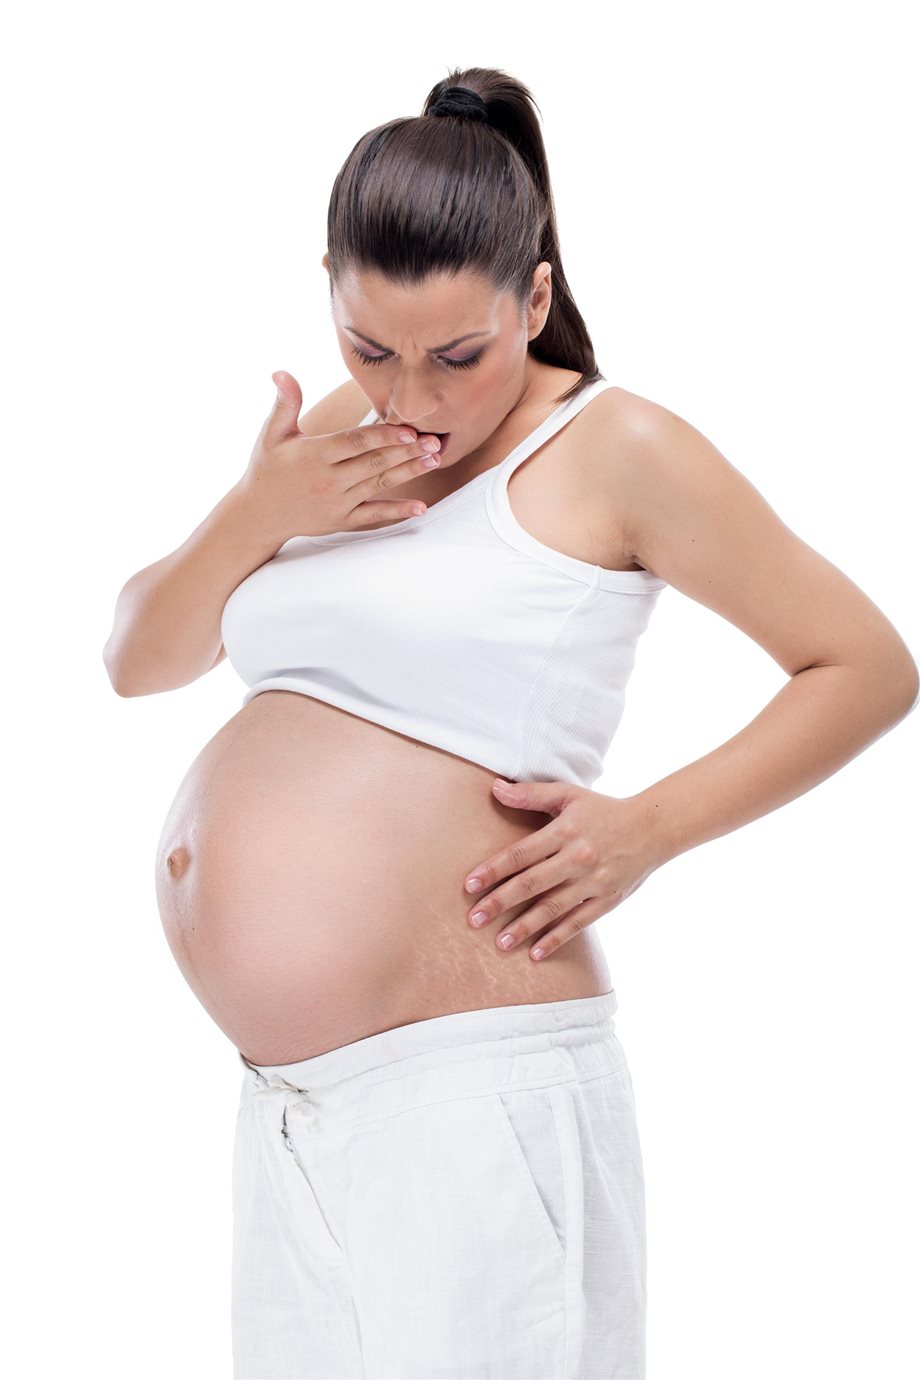 Ραγάδες στην εγκυμοσύνη: Πώς να τις αποφύγετε!